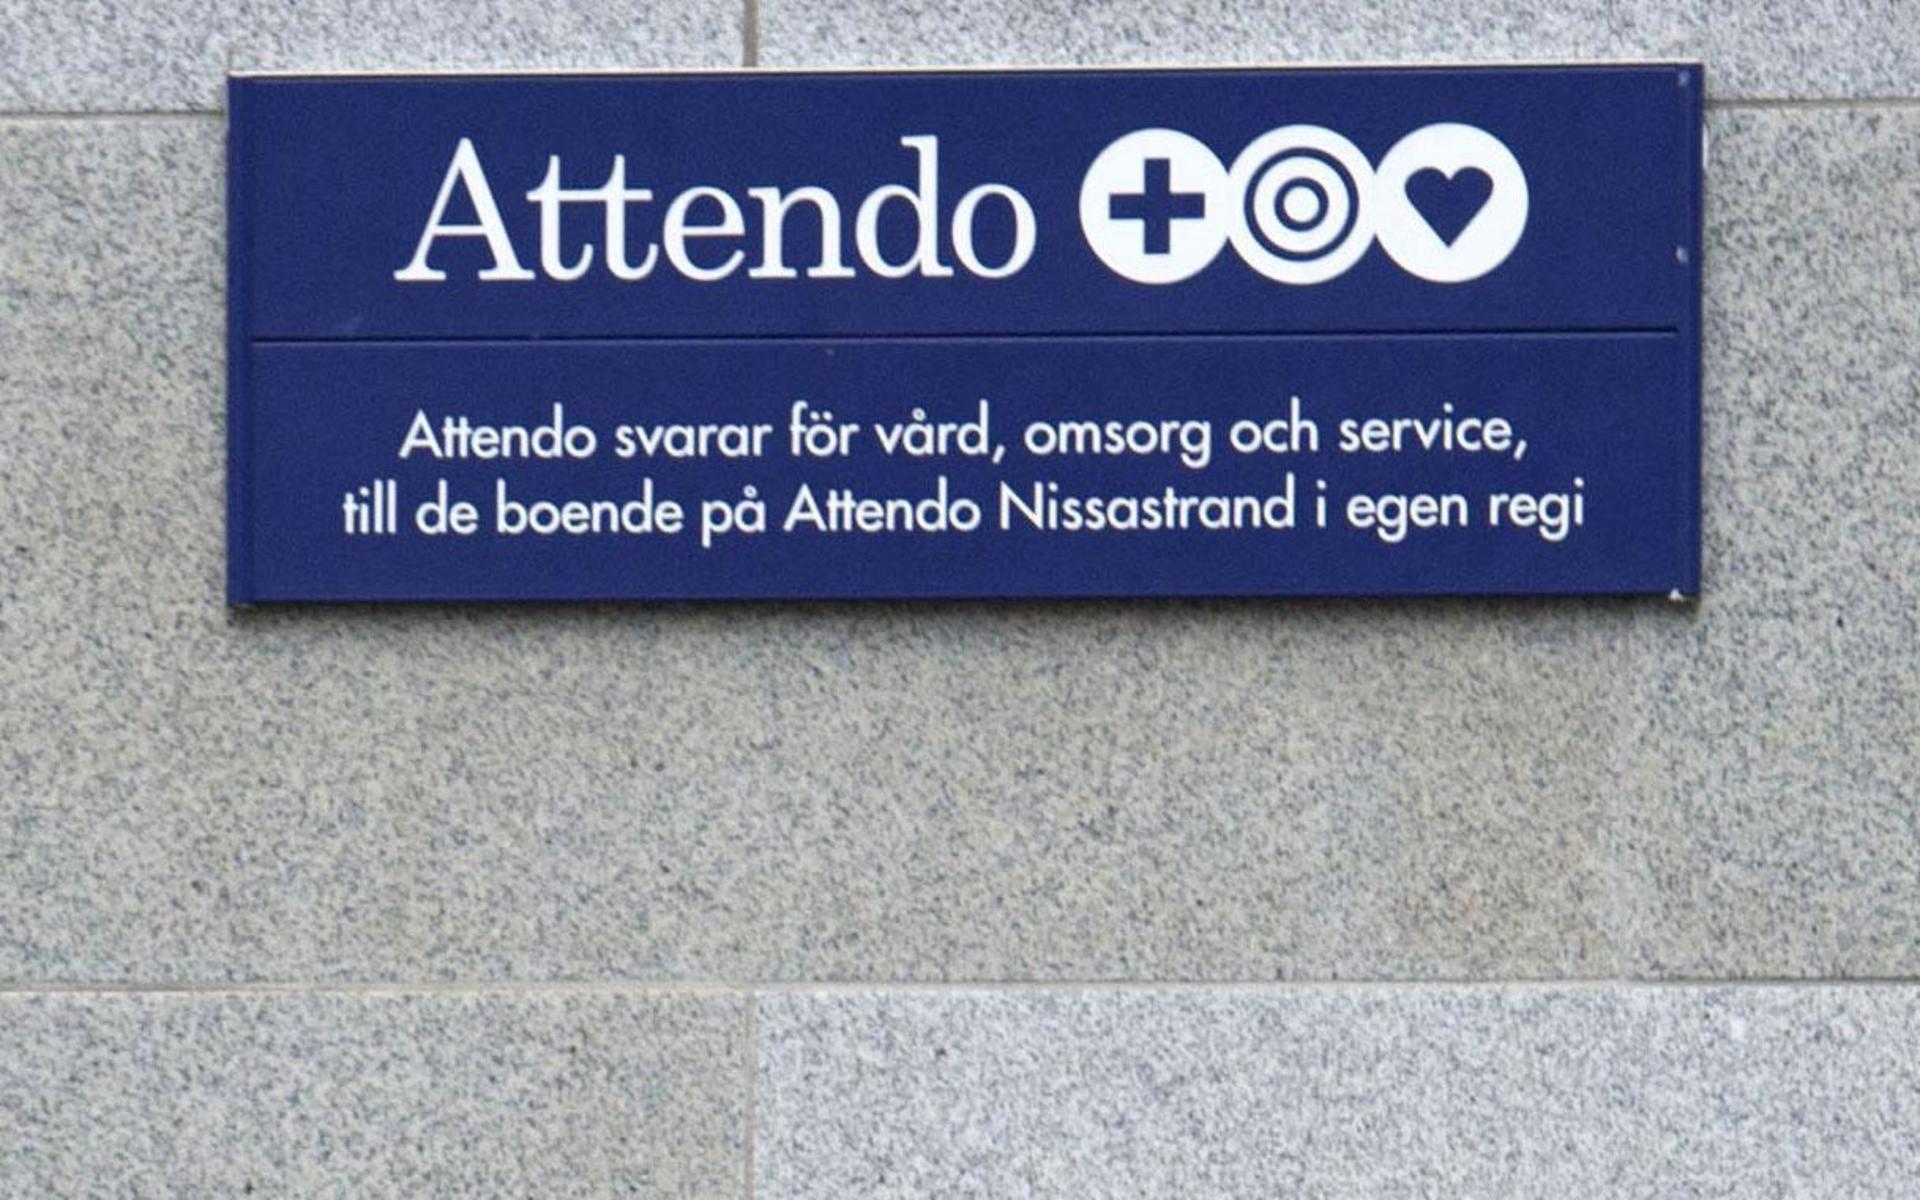 På äldreboendet Attendo Nissastrand finns plats för 72 boende. Under perioden oktober till november 2020 upptäcktes flera fall av covid-19 både bland boende och personal.